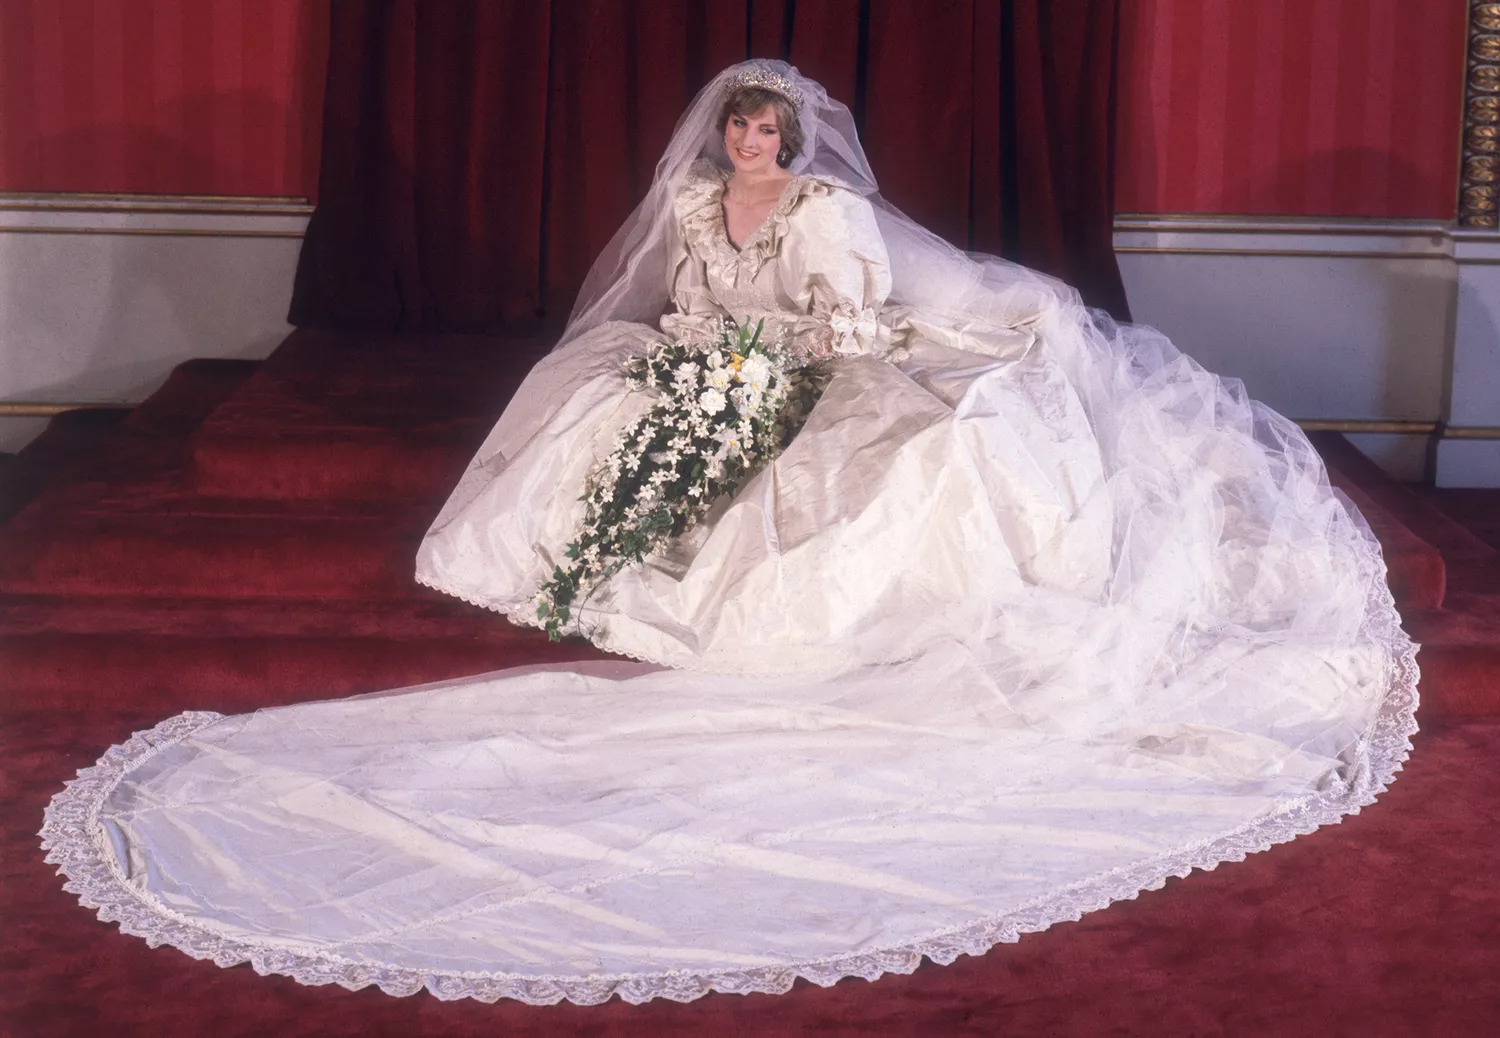 Lady Diana Spencer (1961 - 1997) in her wedding dress designed by David and Elizabeth Emanuel